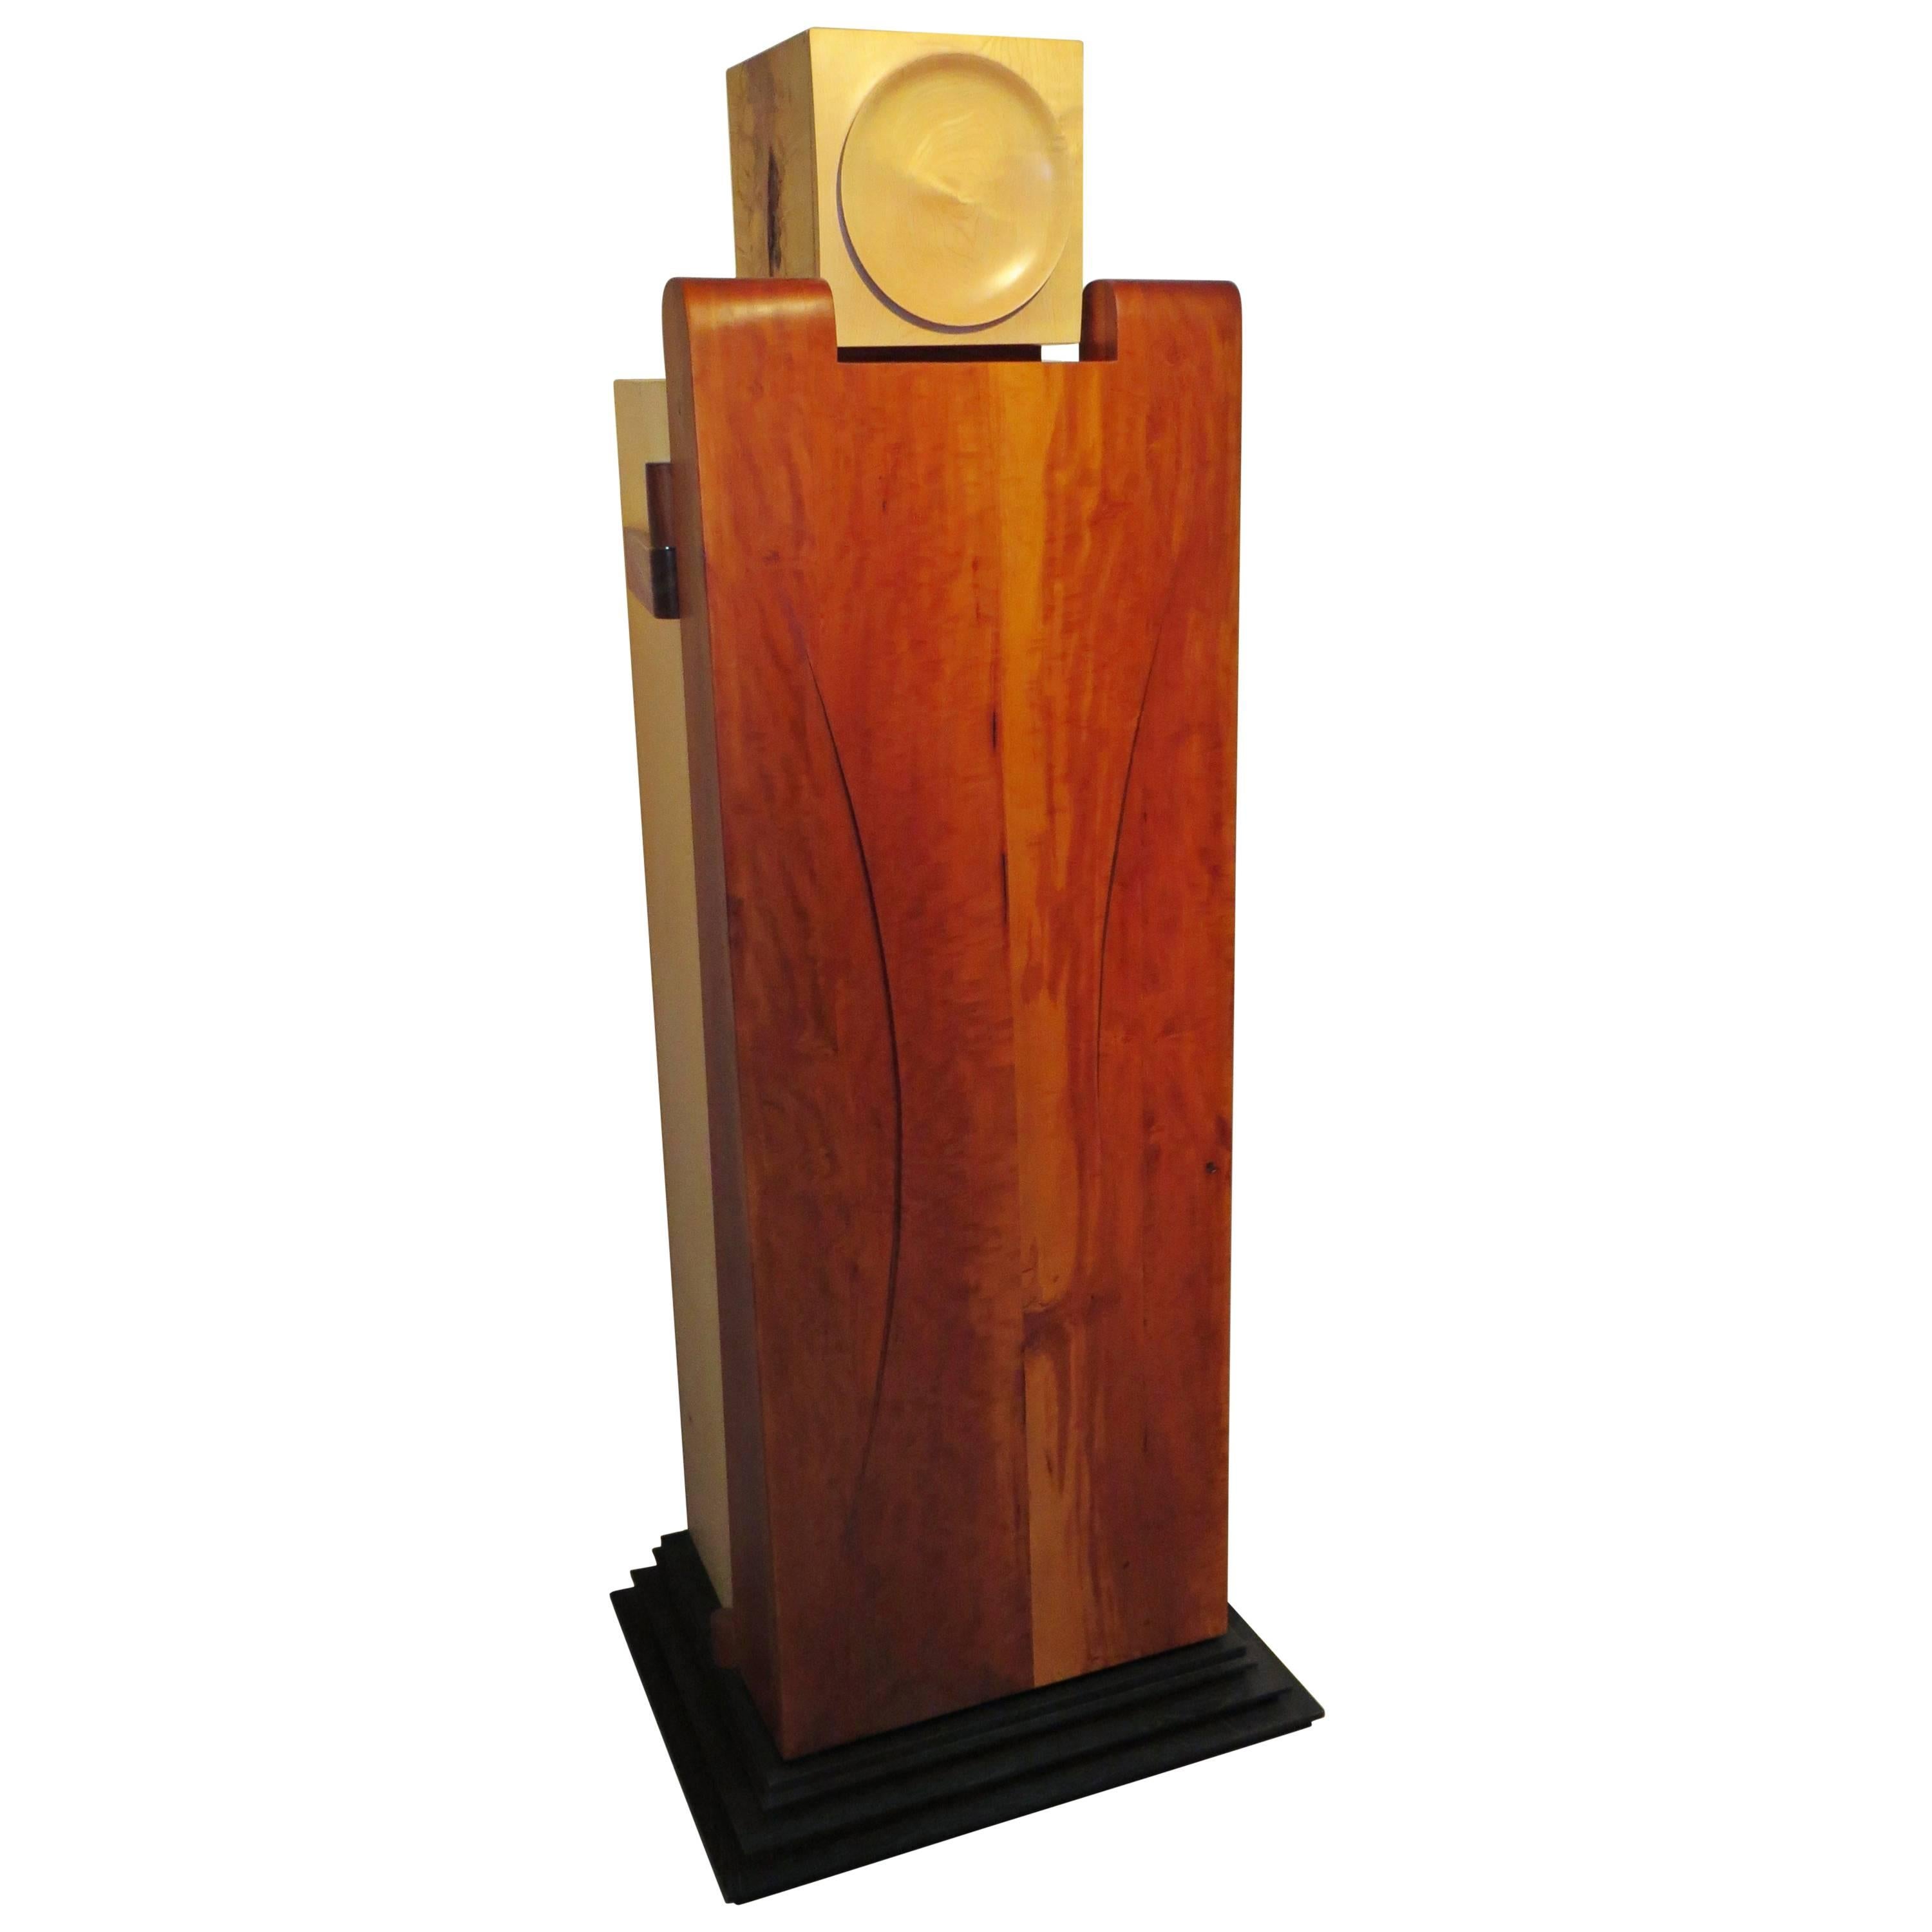 Möbel-Skulptur „Cabinet-Man“ aus Massivholz, einzigartig